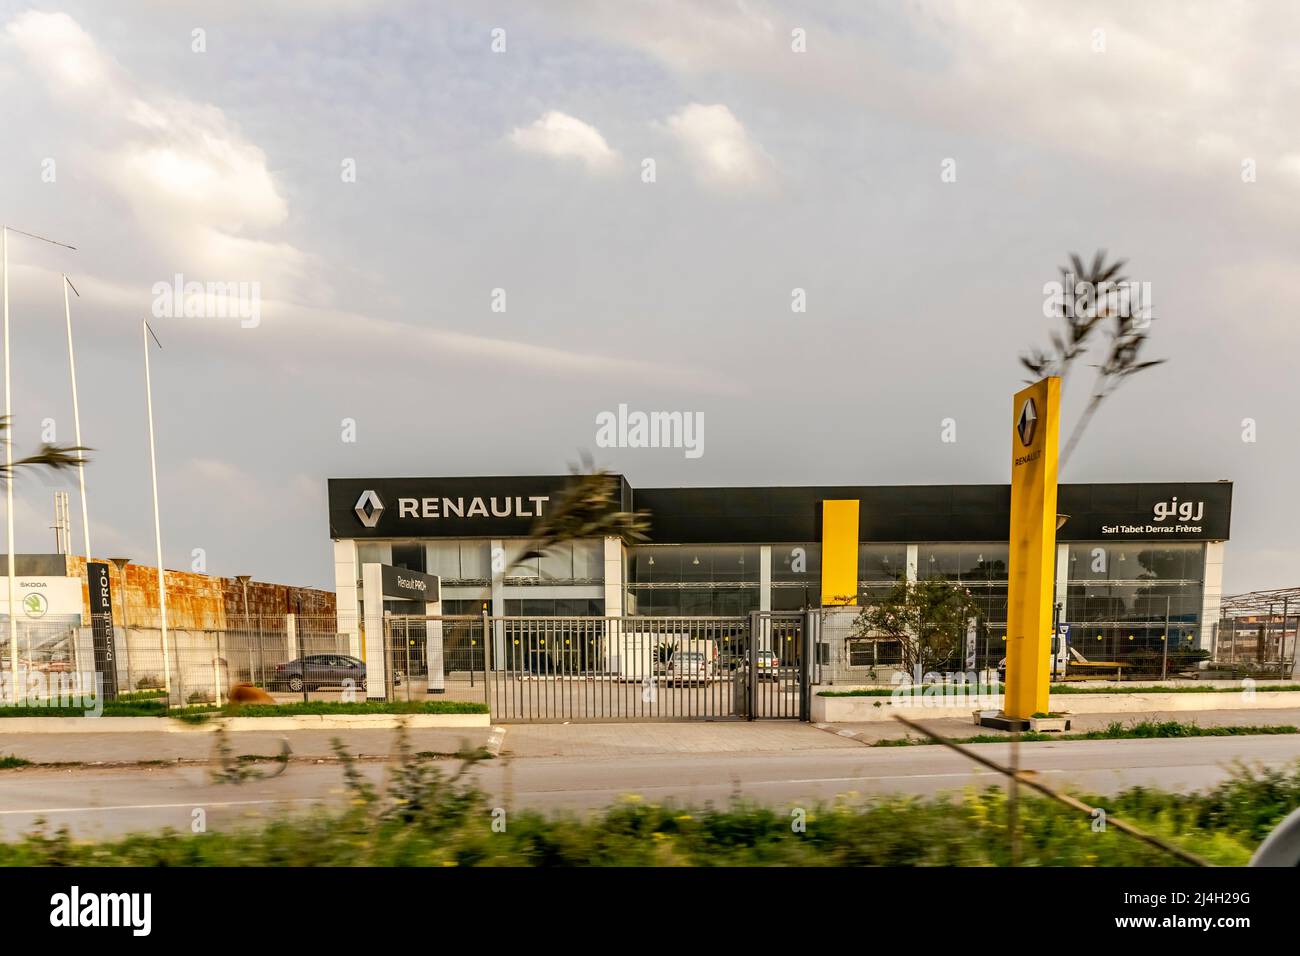 Concessionario Renault, Sarl Tabet Derraz Freres, edificio esterno giallo color Brandmark pannello con logo in caratteri arabi. Spazio bloccato e vuoto. Foto Stock